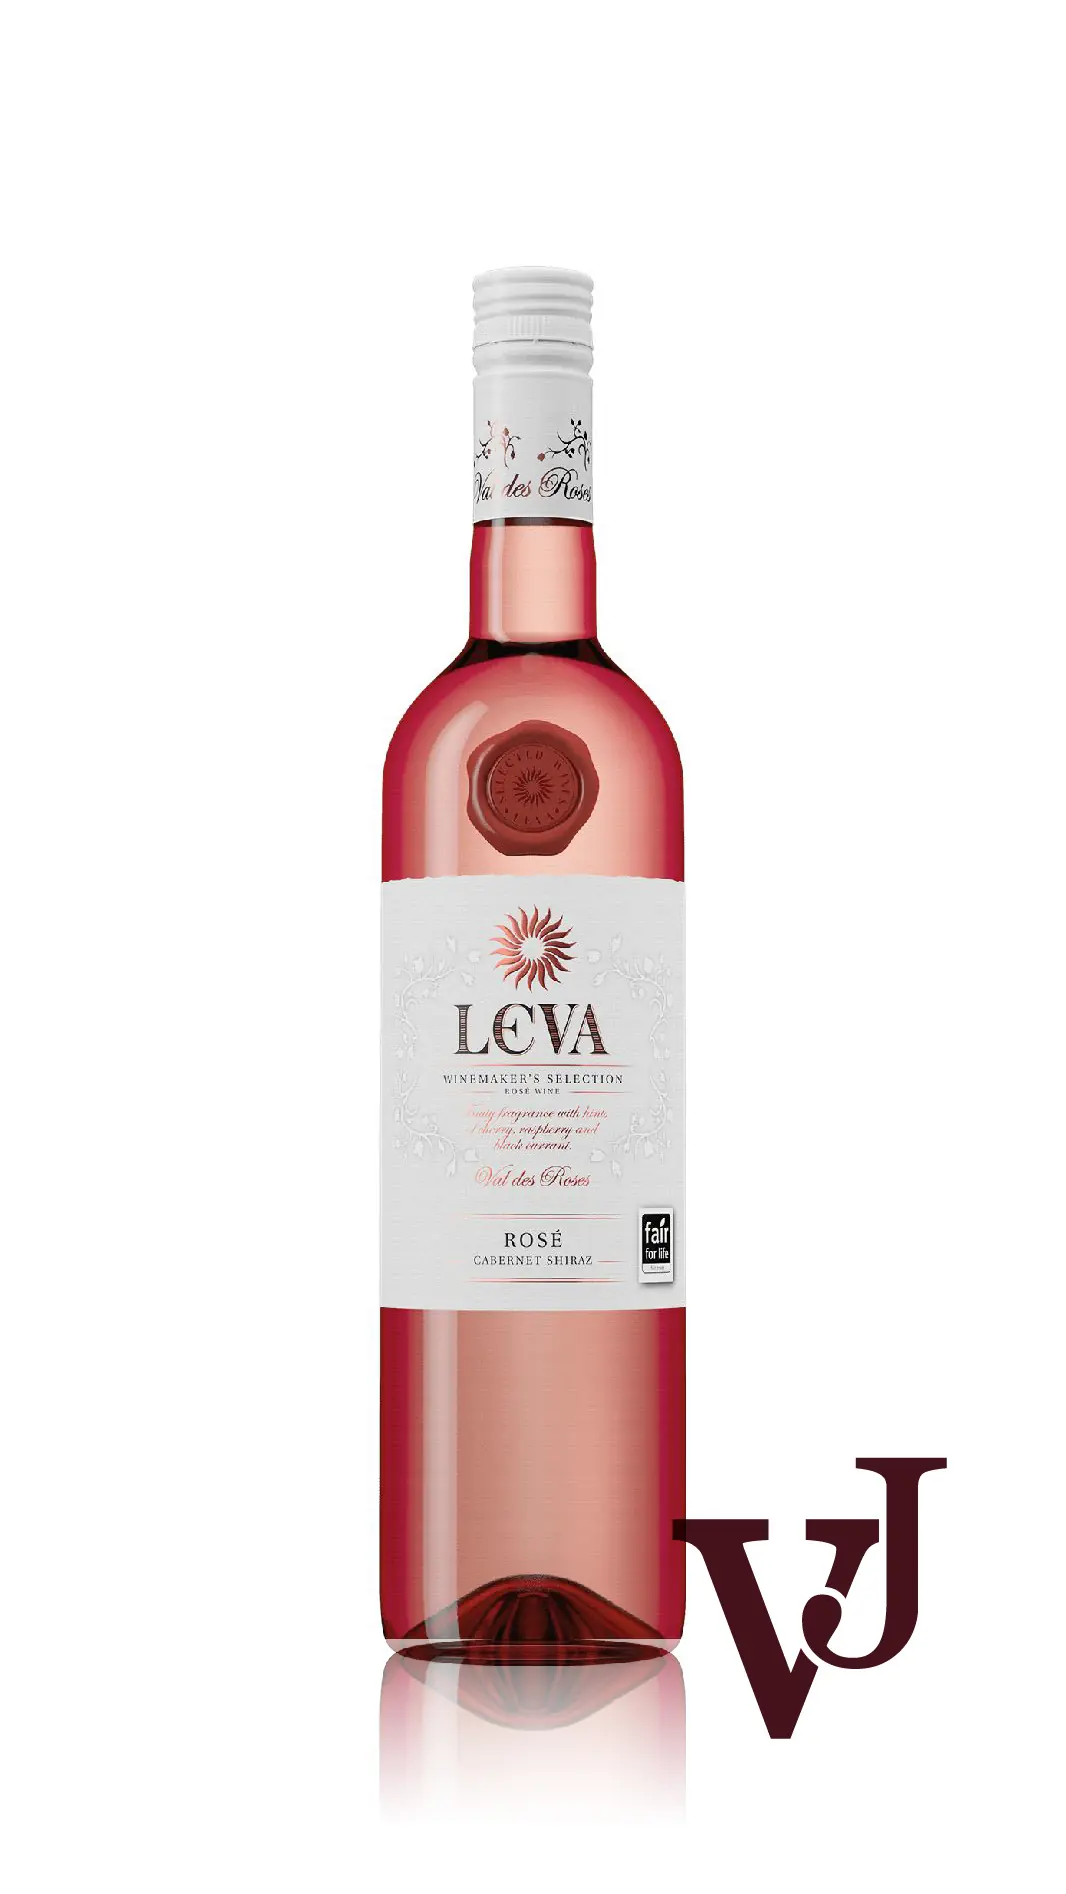 Rosé Vin - Leva Cabernet Shiraz Rosé artikel nummer 266001 från producenten Sortoizpitvane Sungurlare från området Bulgarien - Vinjournalen.se